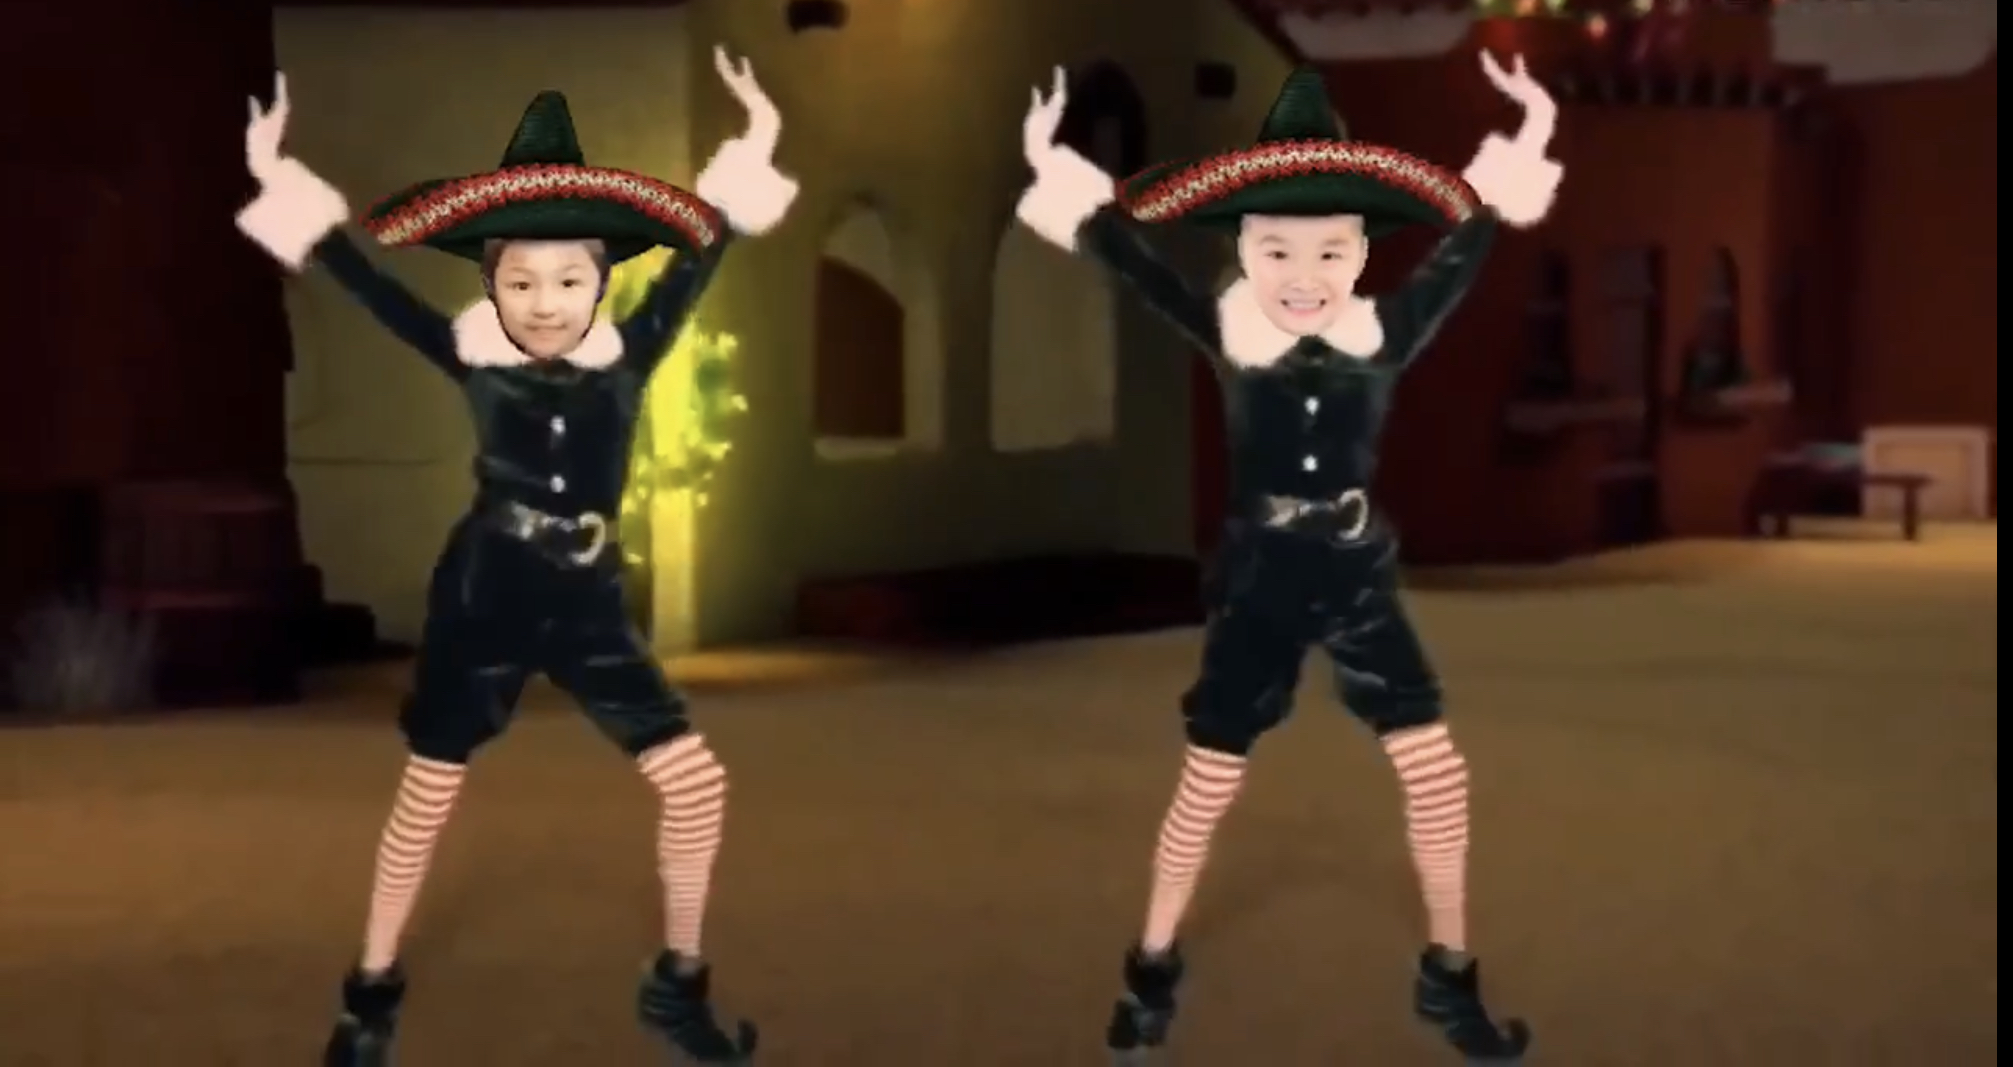 【舞蹈札記】免費APP整好玩MV  變身跳舞聖誕老人  